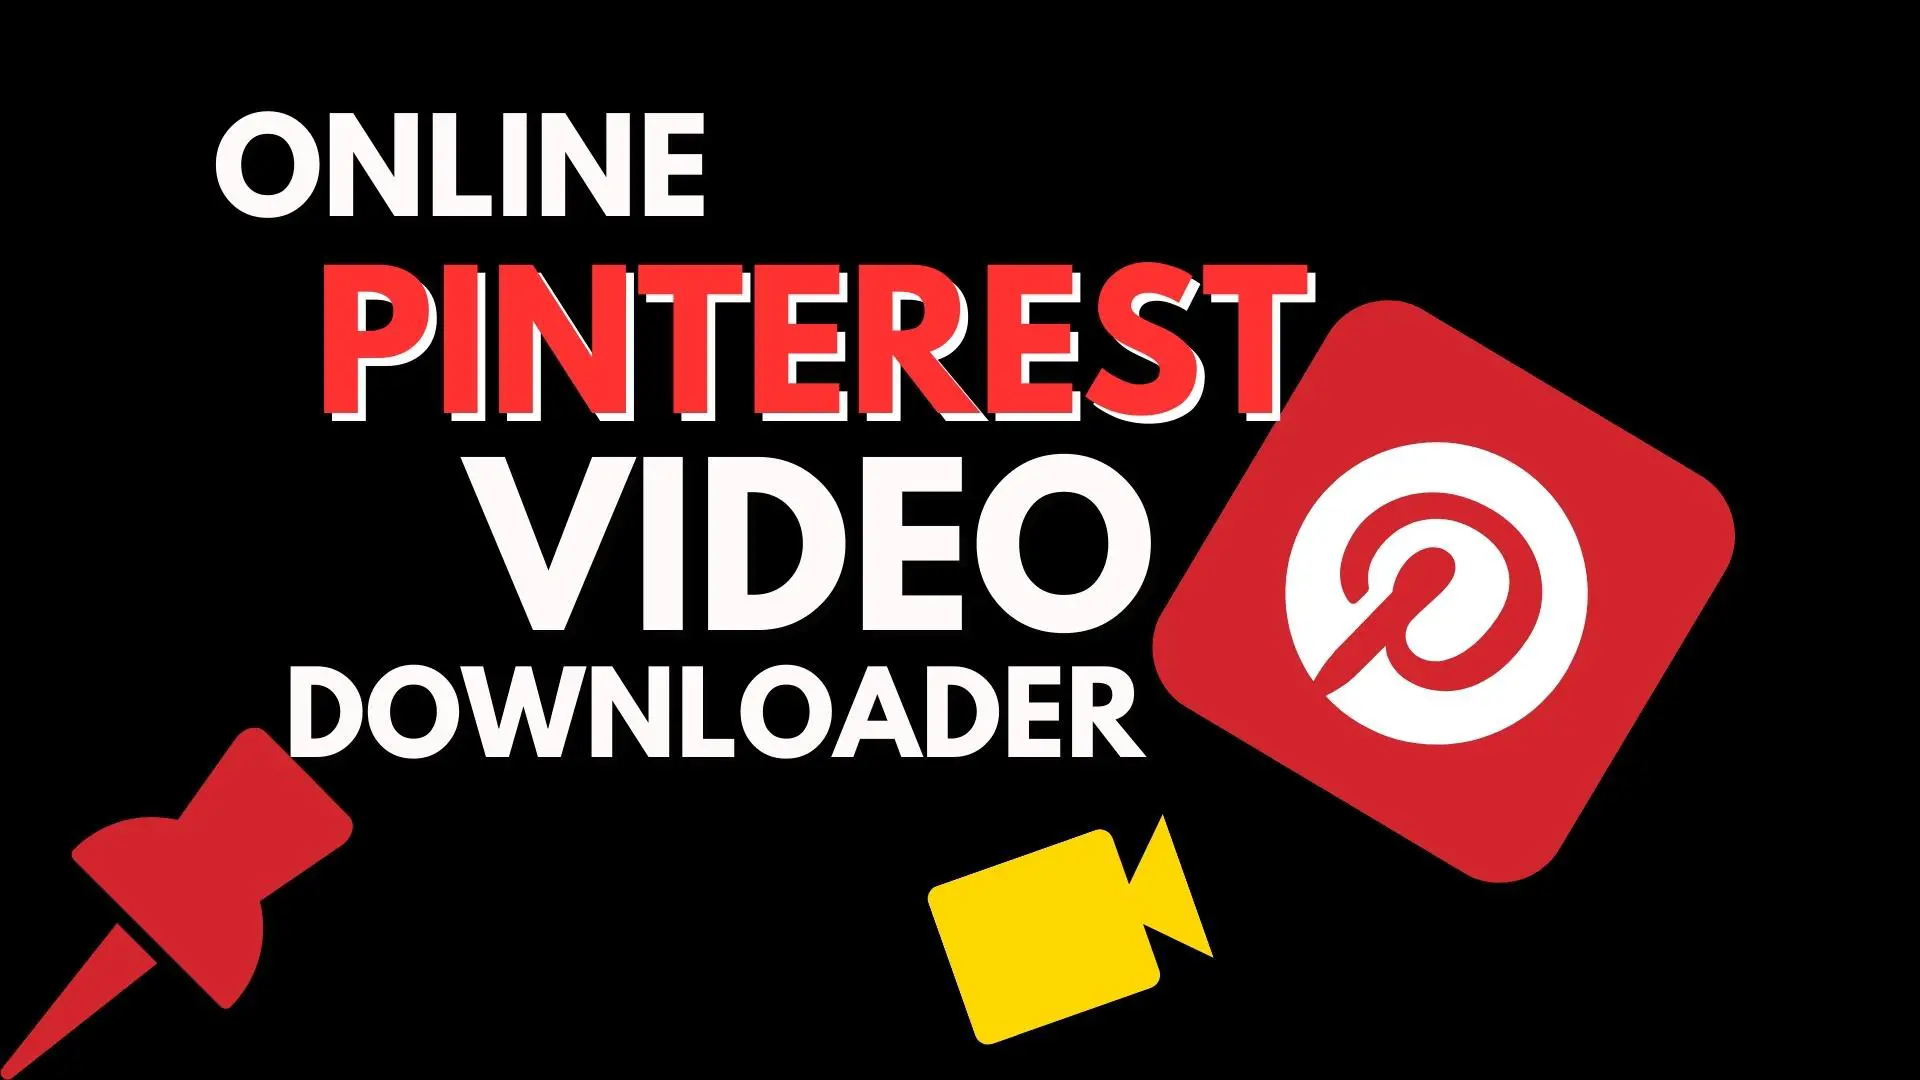 Pinterest Video Downloader Online: Download Videos Easily